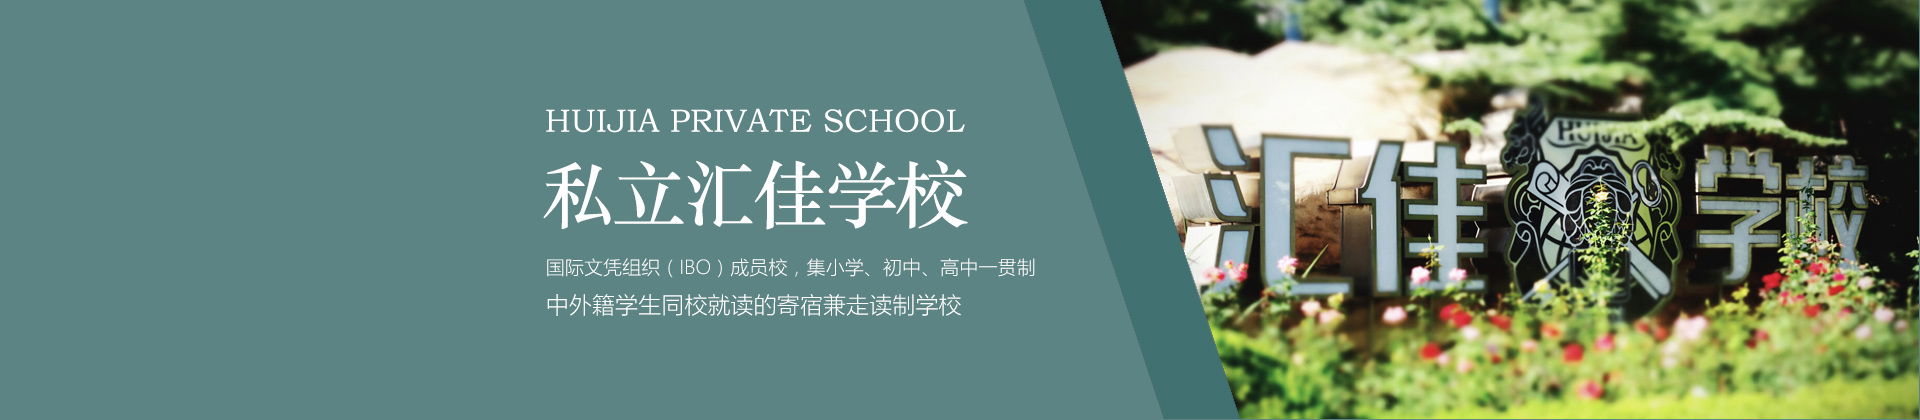 北京私立汇佳学校